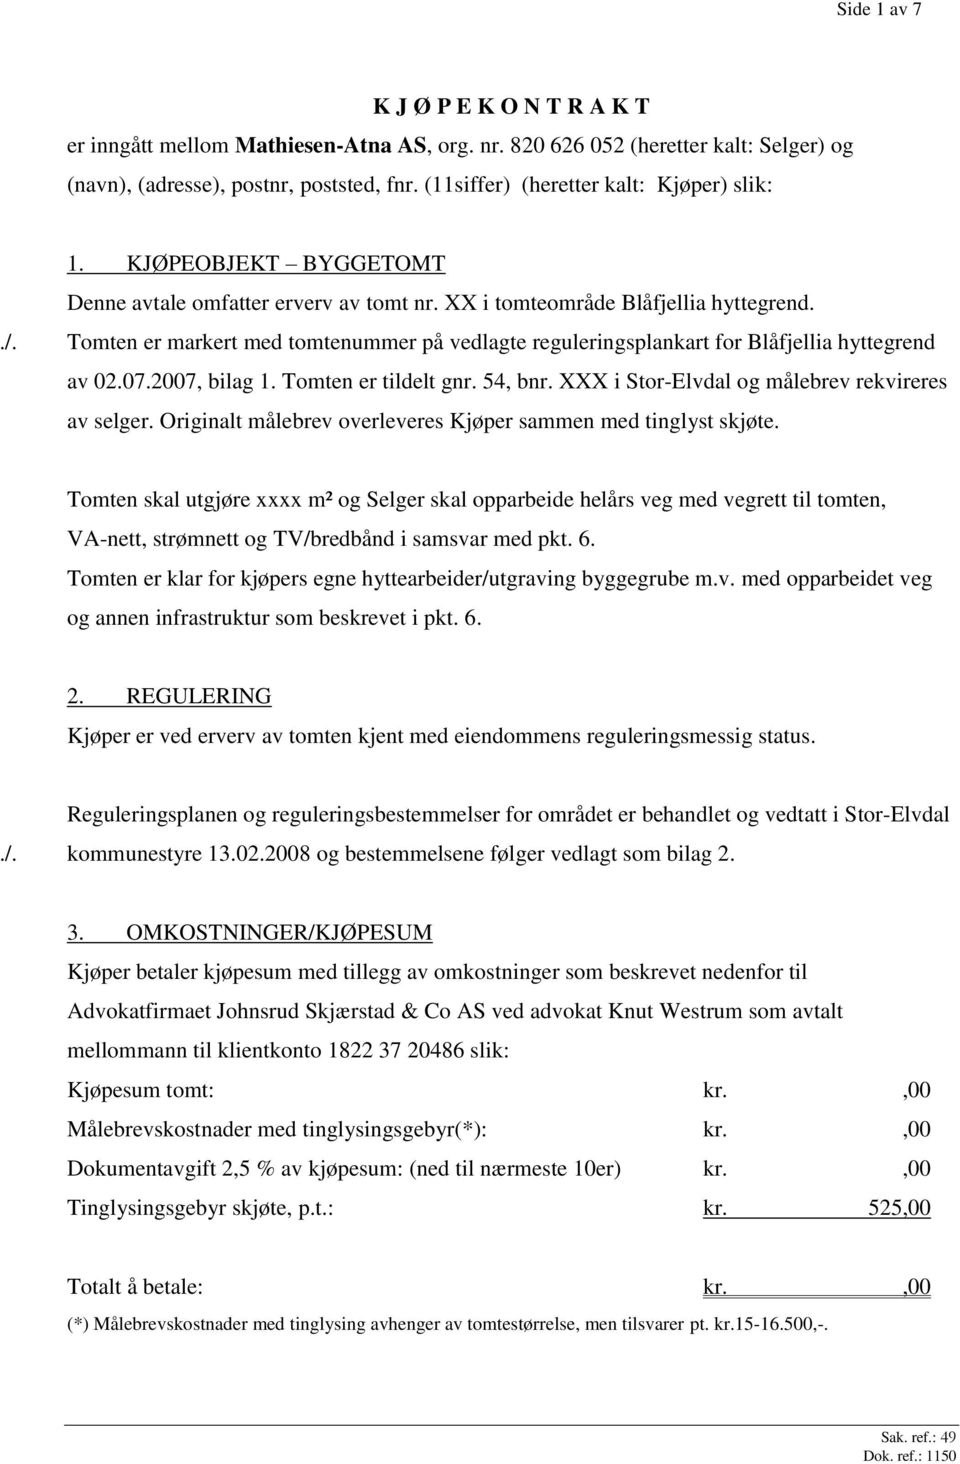 Tomten er markert med tomtenummer på vedlagte reguleringsplankart for Blåfjellia hyttegrend av 02.07.2007, bilag 1. Tomten er tildelt gnr. 54, bnr. XXX i Stor-Elvdal og målebrev rekvireres av selger.